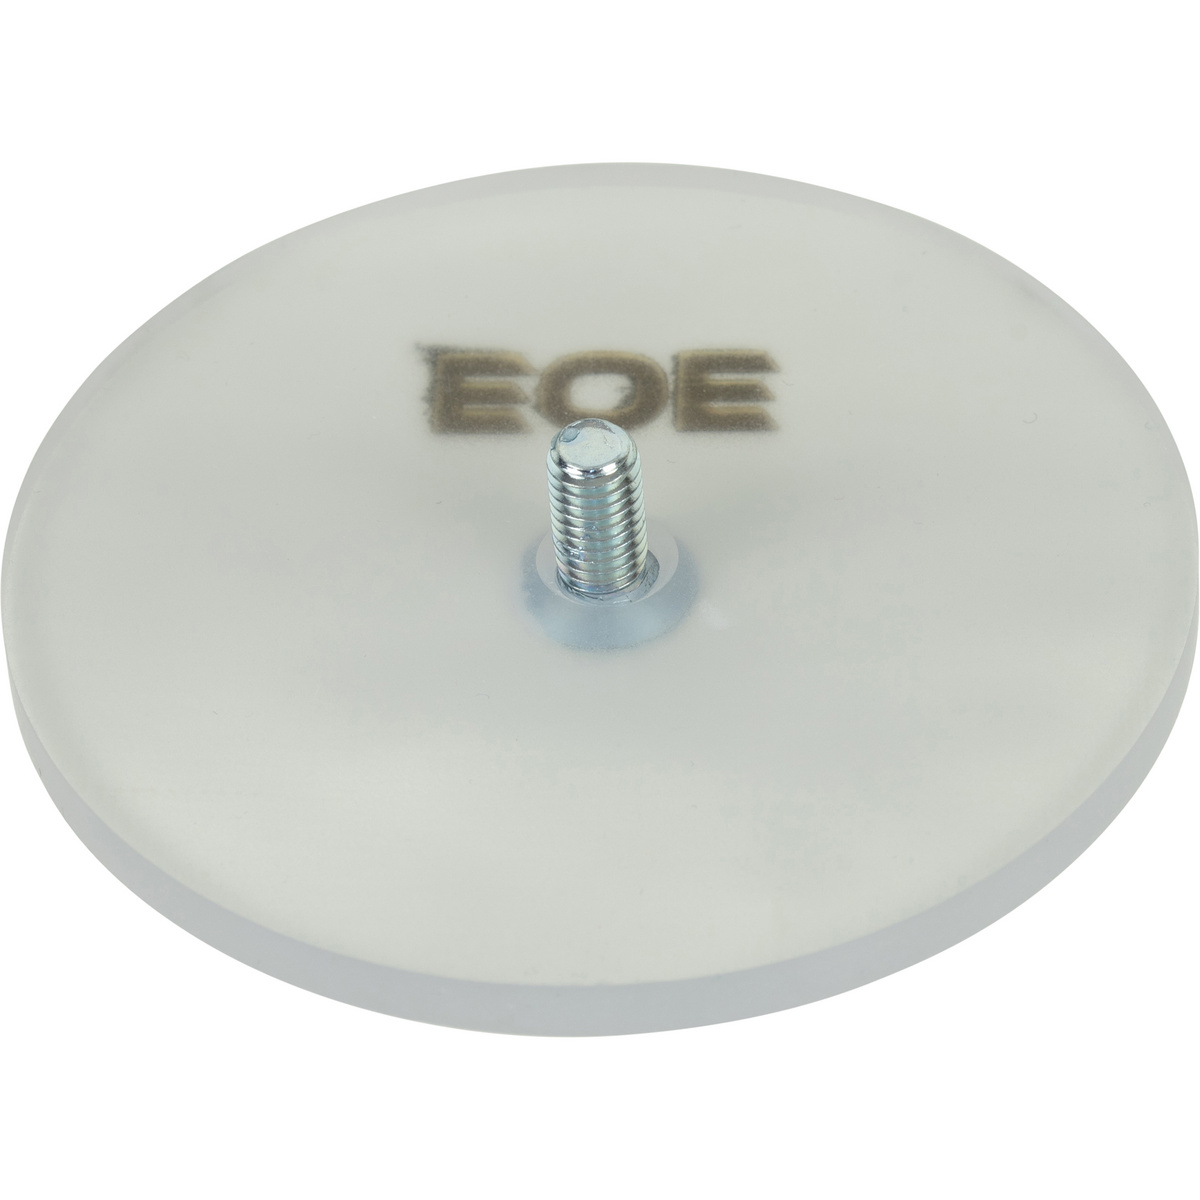 Image of EOE - Eifel Outdoor Equipment Gommino piede